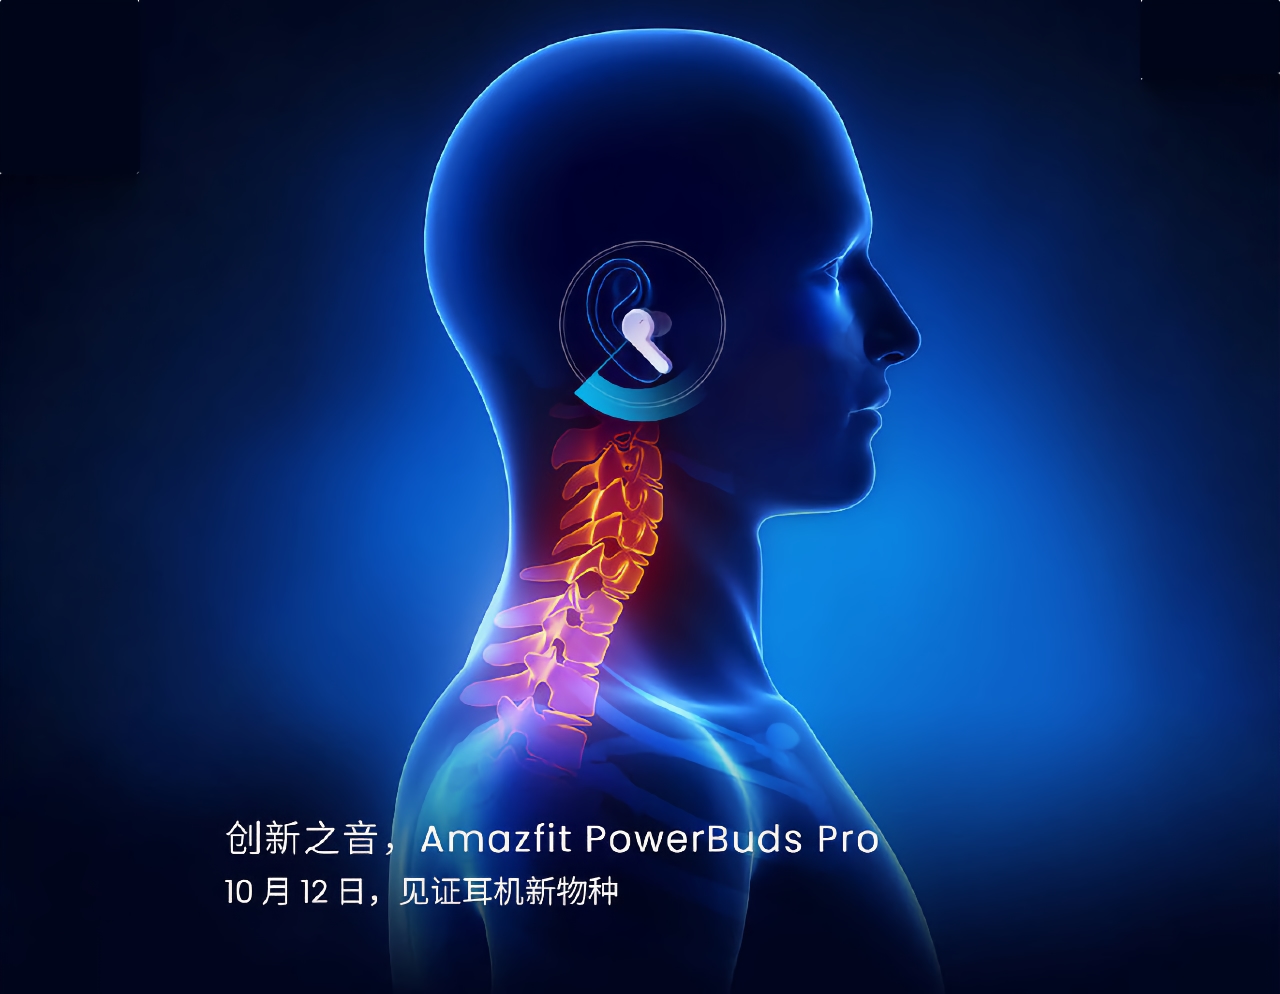 Huami annonce les écouteurs TWS Amazfit Powerbuds Pro, qui mesureront la fréquence cardiaque et surveilleront la posture de l'utilisateur